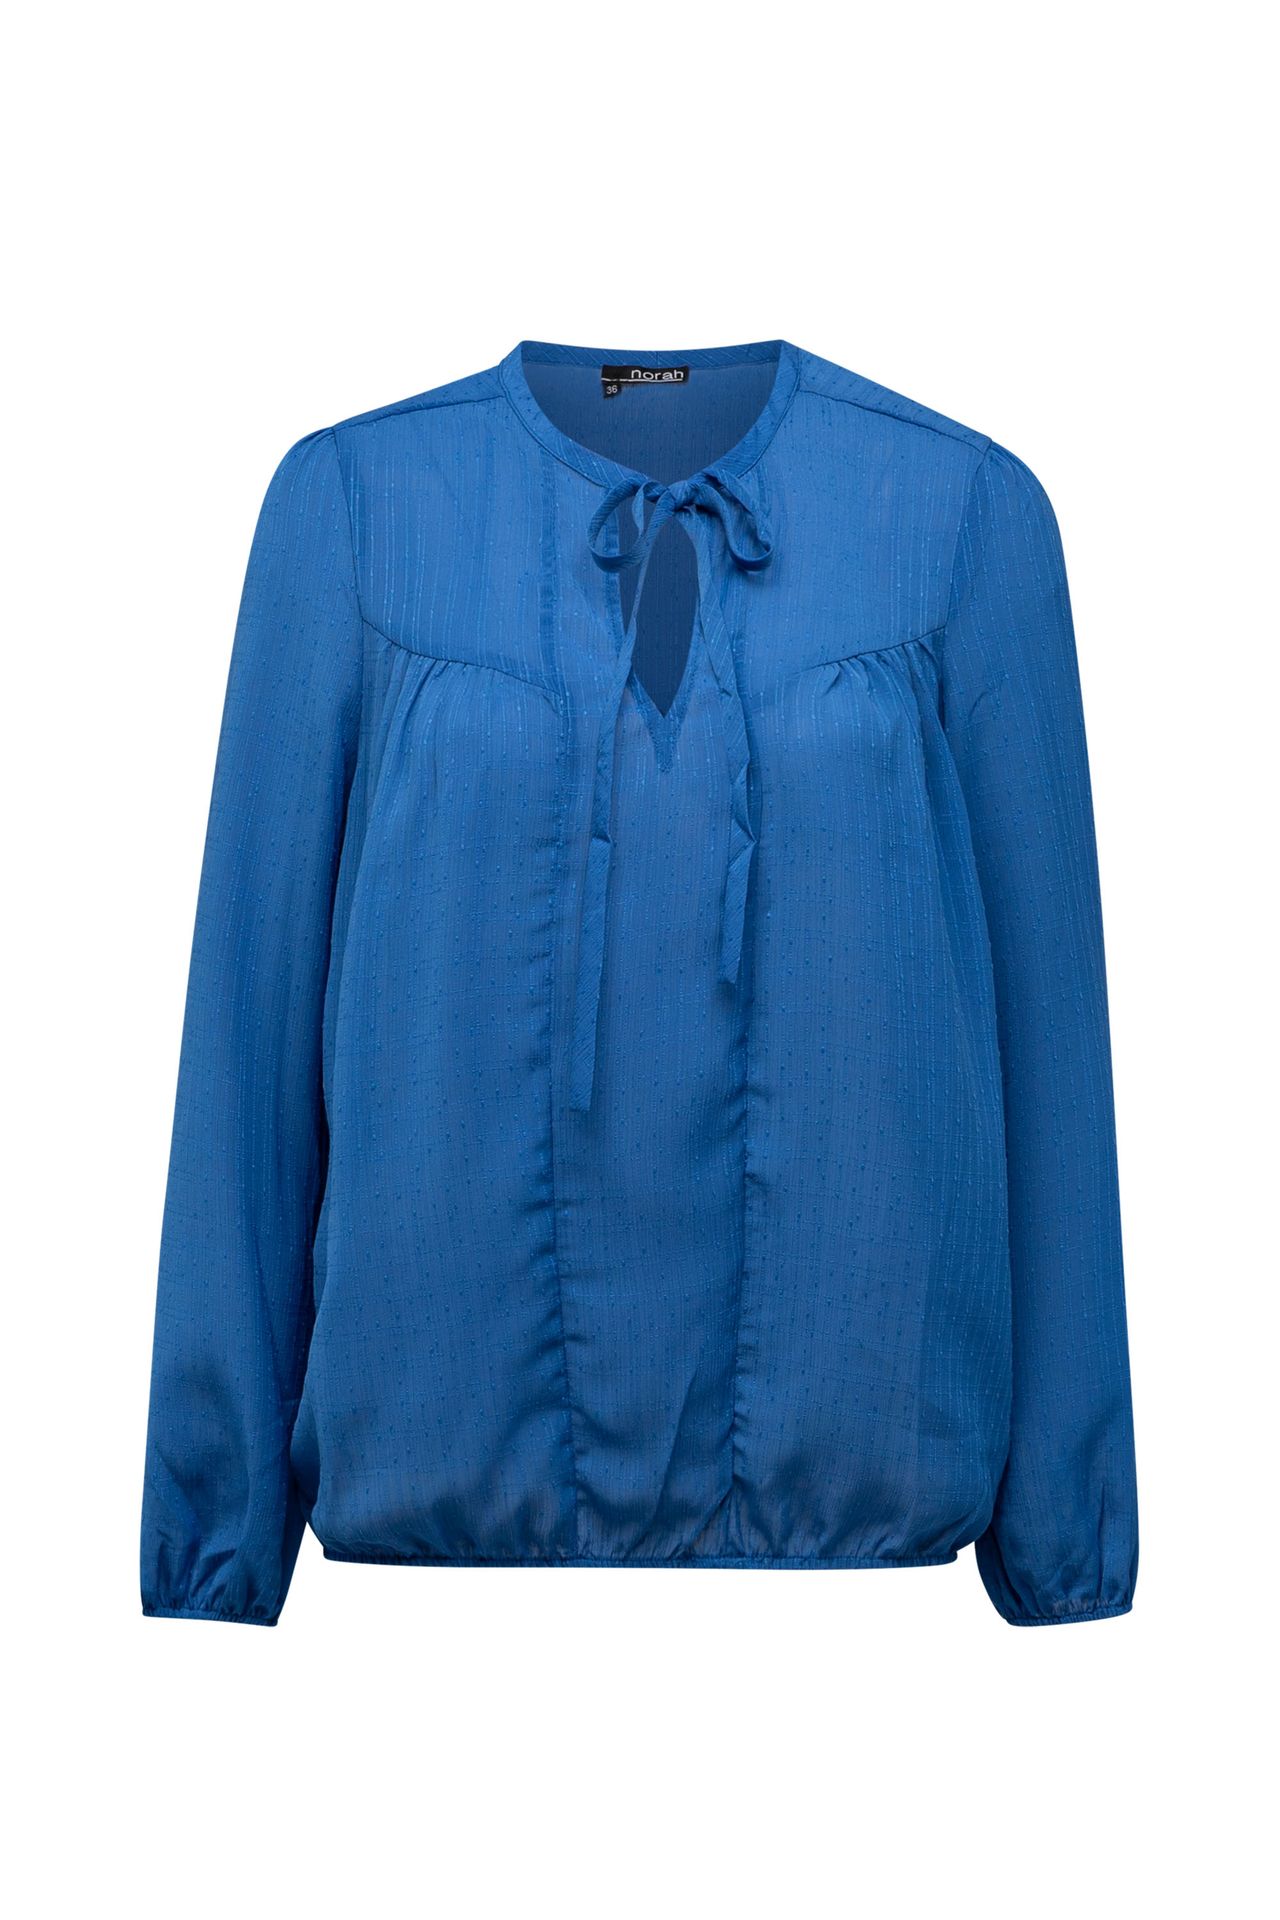  Blauwe blouse met pofmouwen blue 213324-400-38